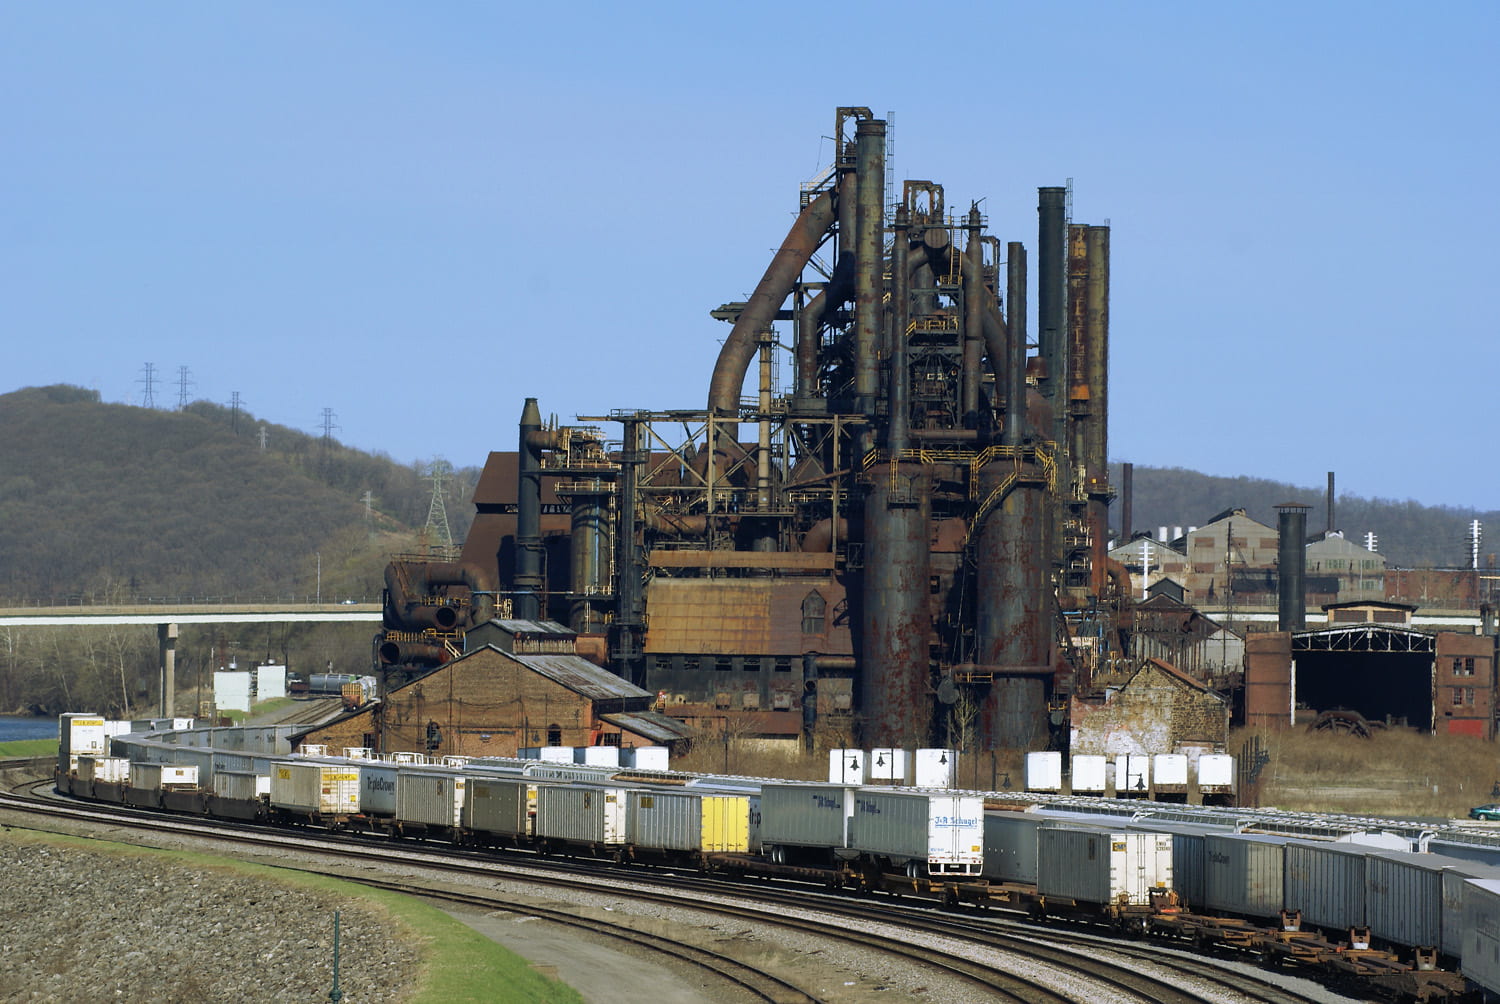 Bethlehem Steel plant